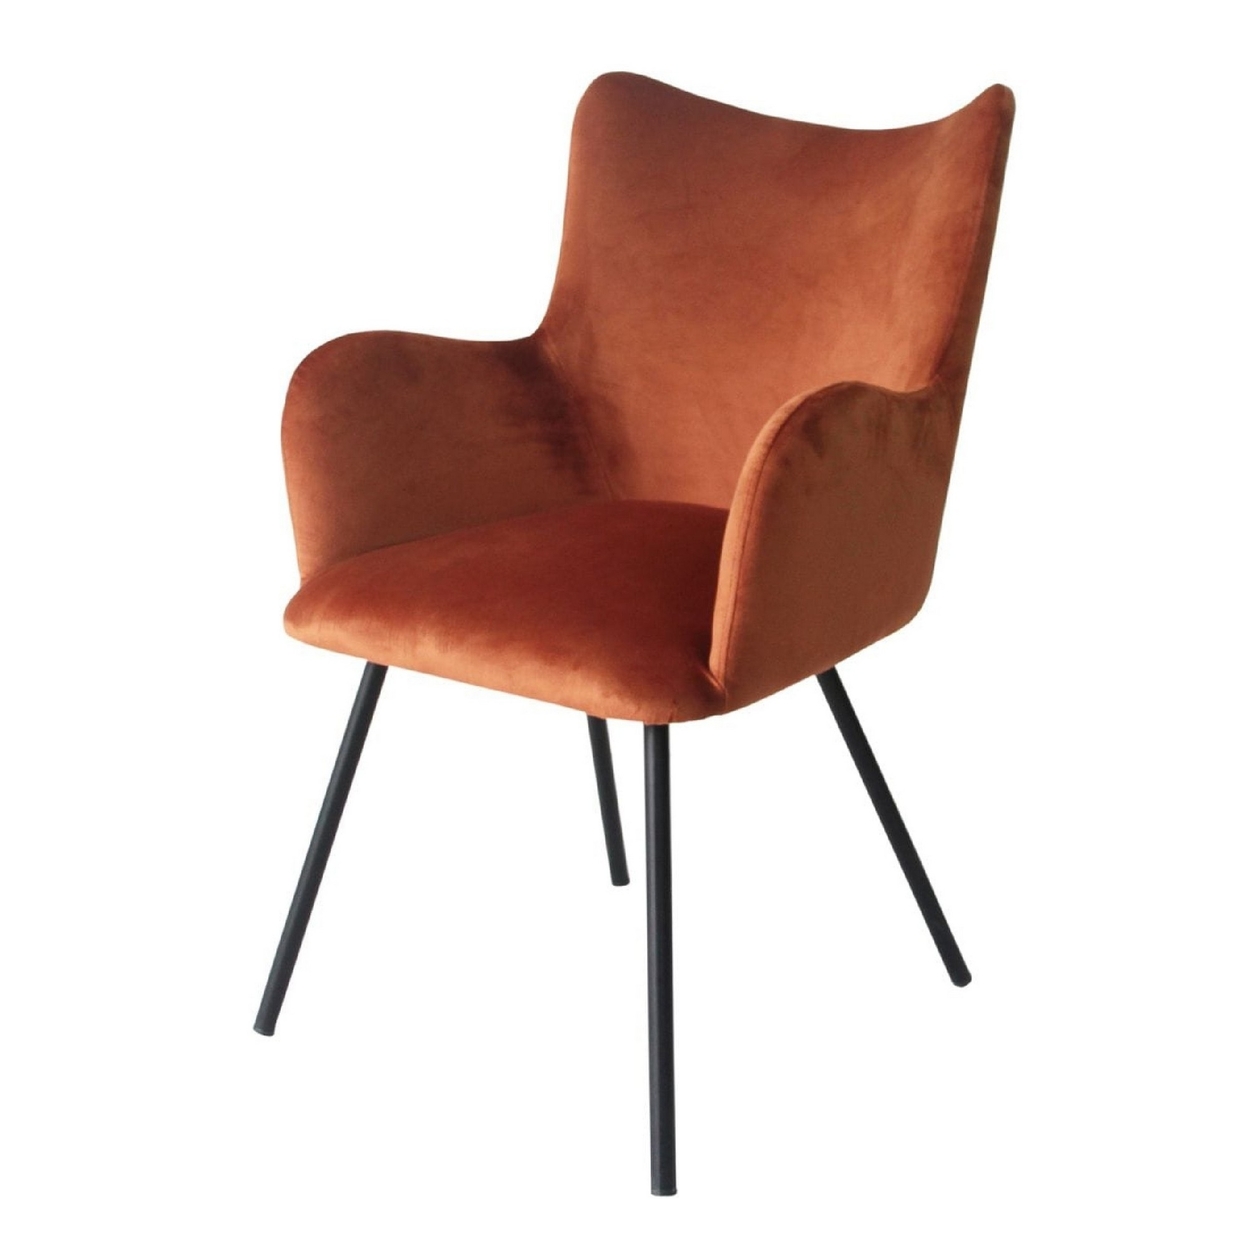 Cid 25 Inch Modern Dining Chair, Orange Velvet, Black Metal Legs- Saltoro Sherpi